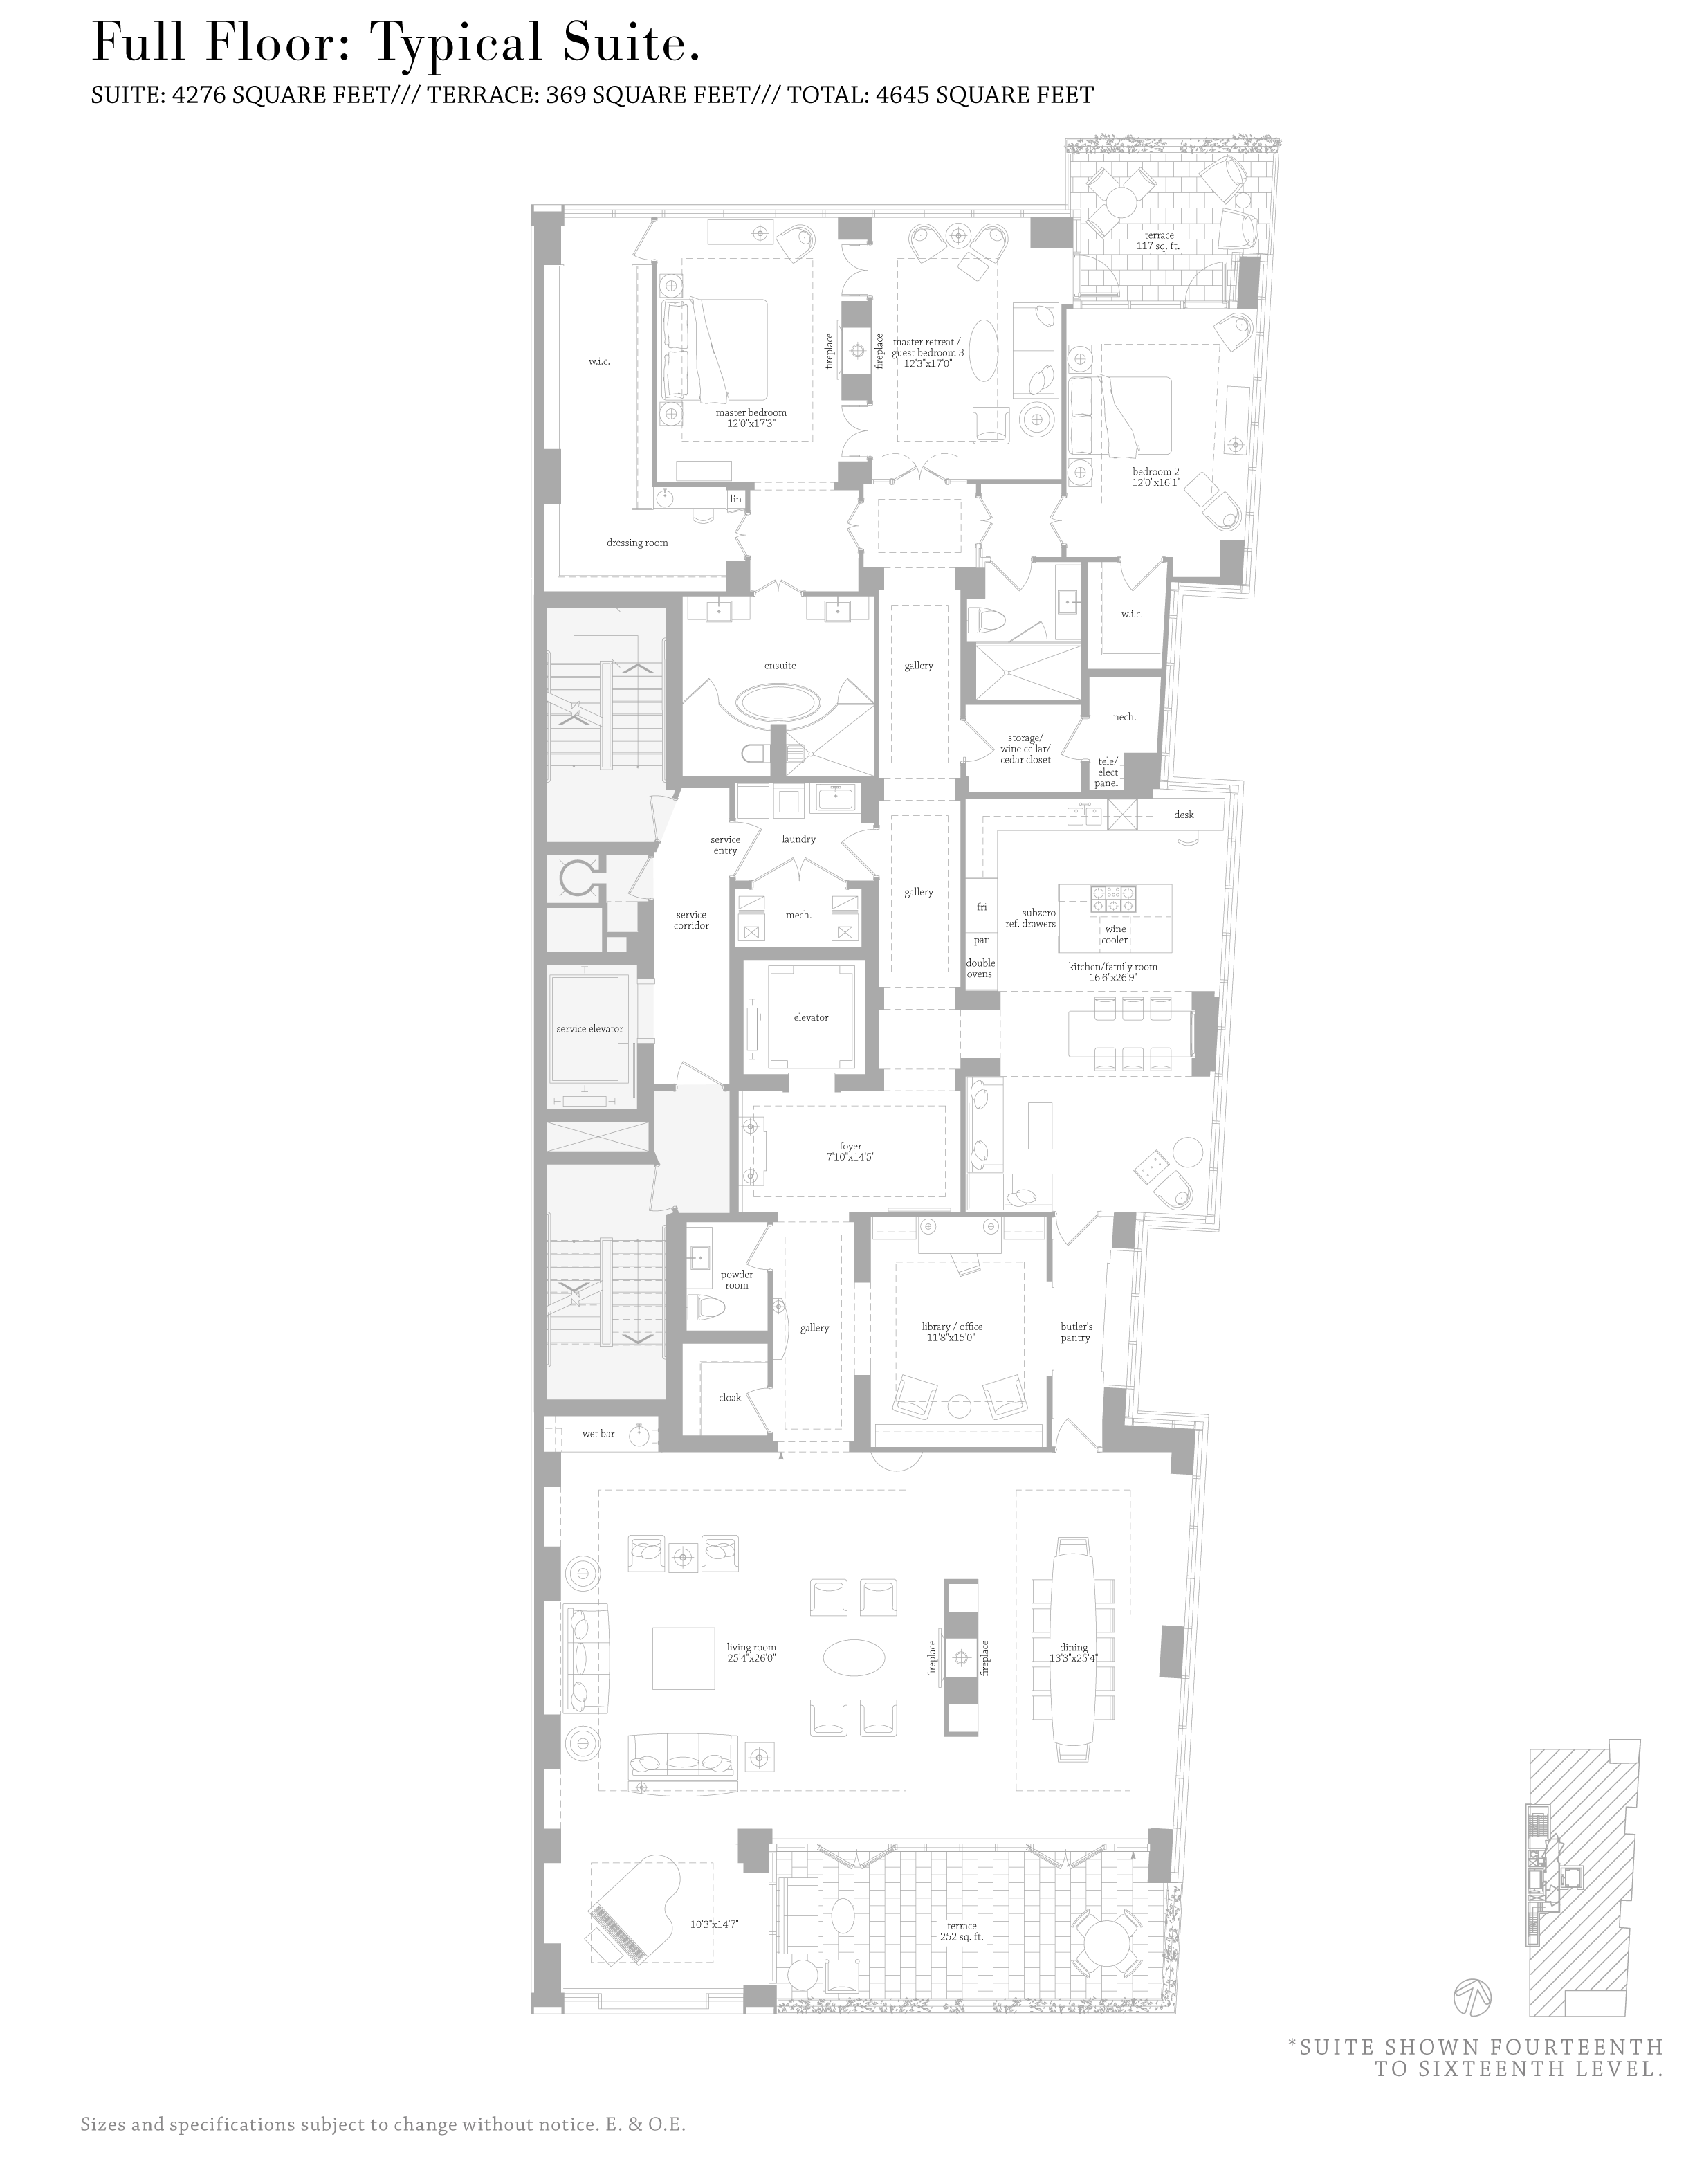 MUSEUM HOUSE FLOORPLANS - FULL FLOOR 4,200 SQ FT